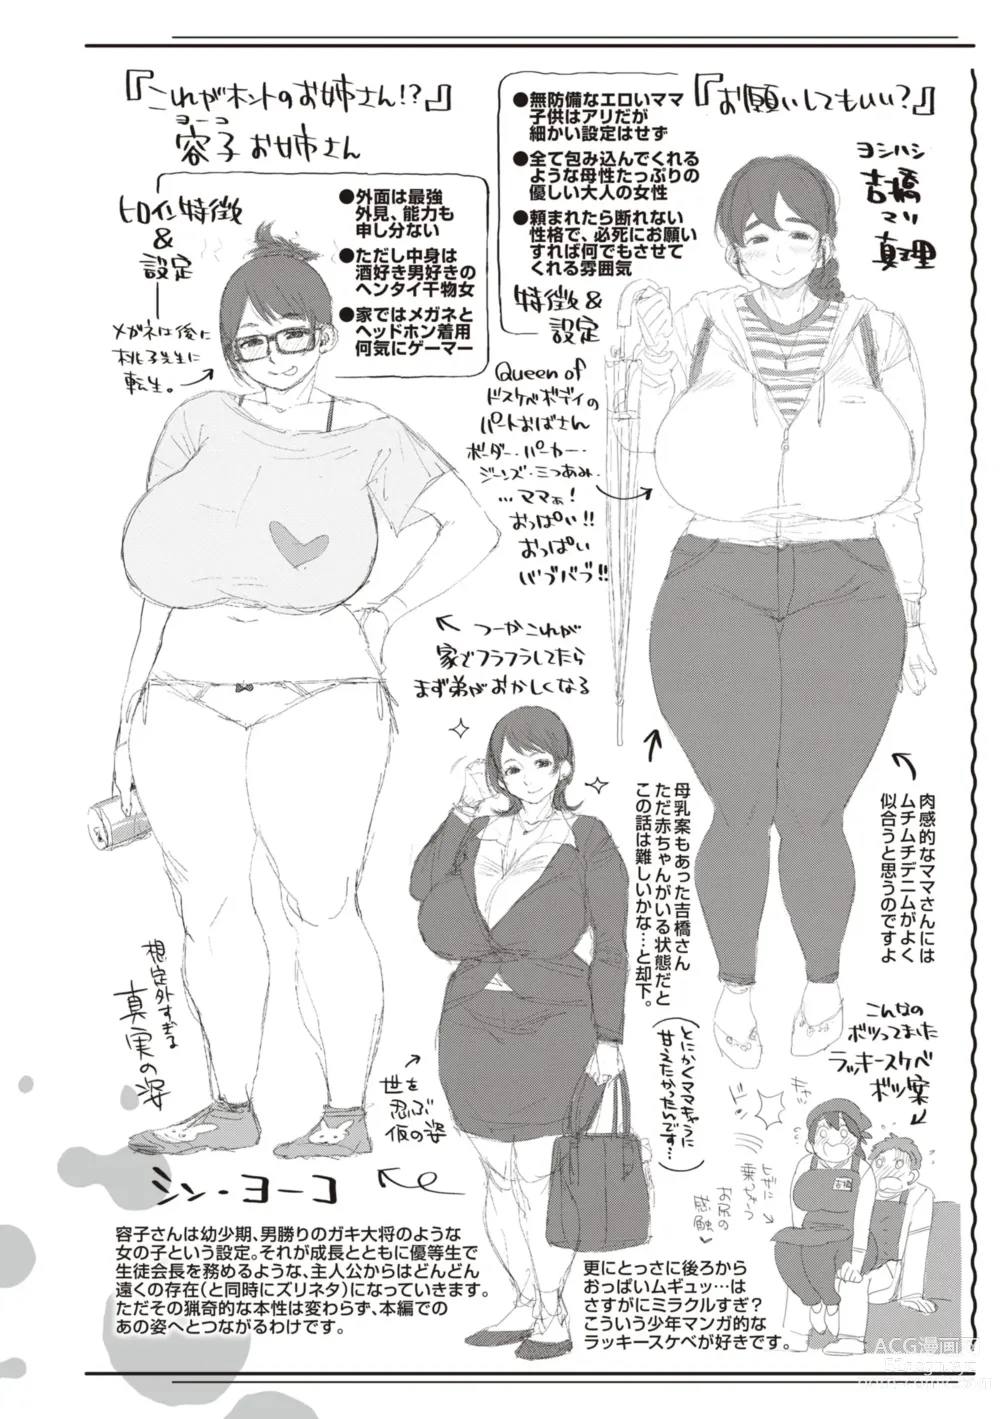 Page 166 of manga Hitodzuma no uso wa sugu bareru